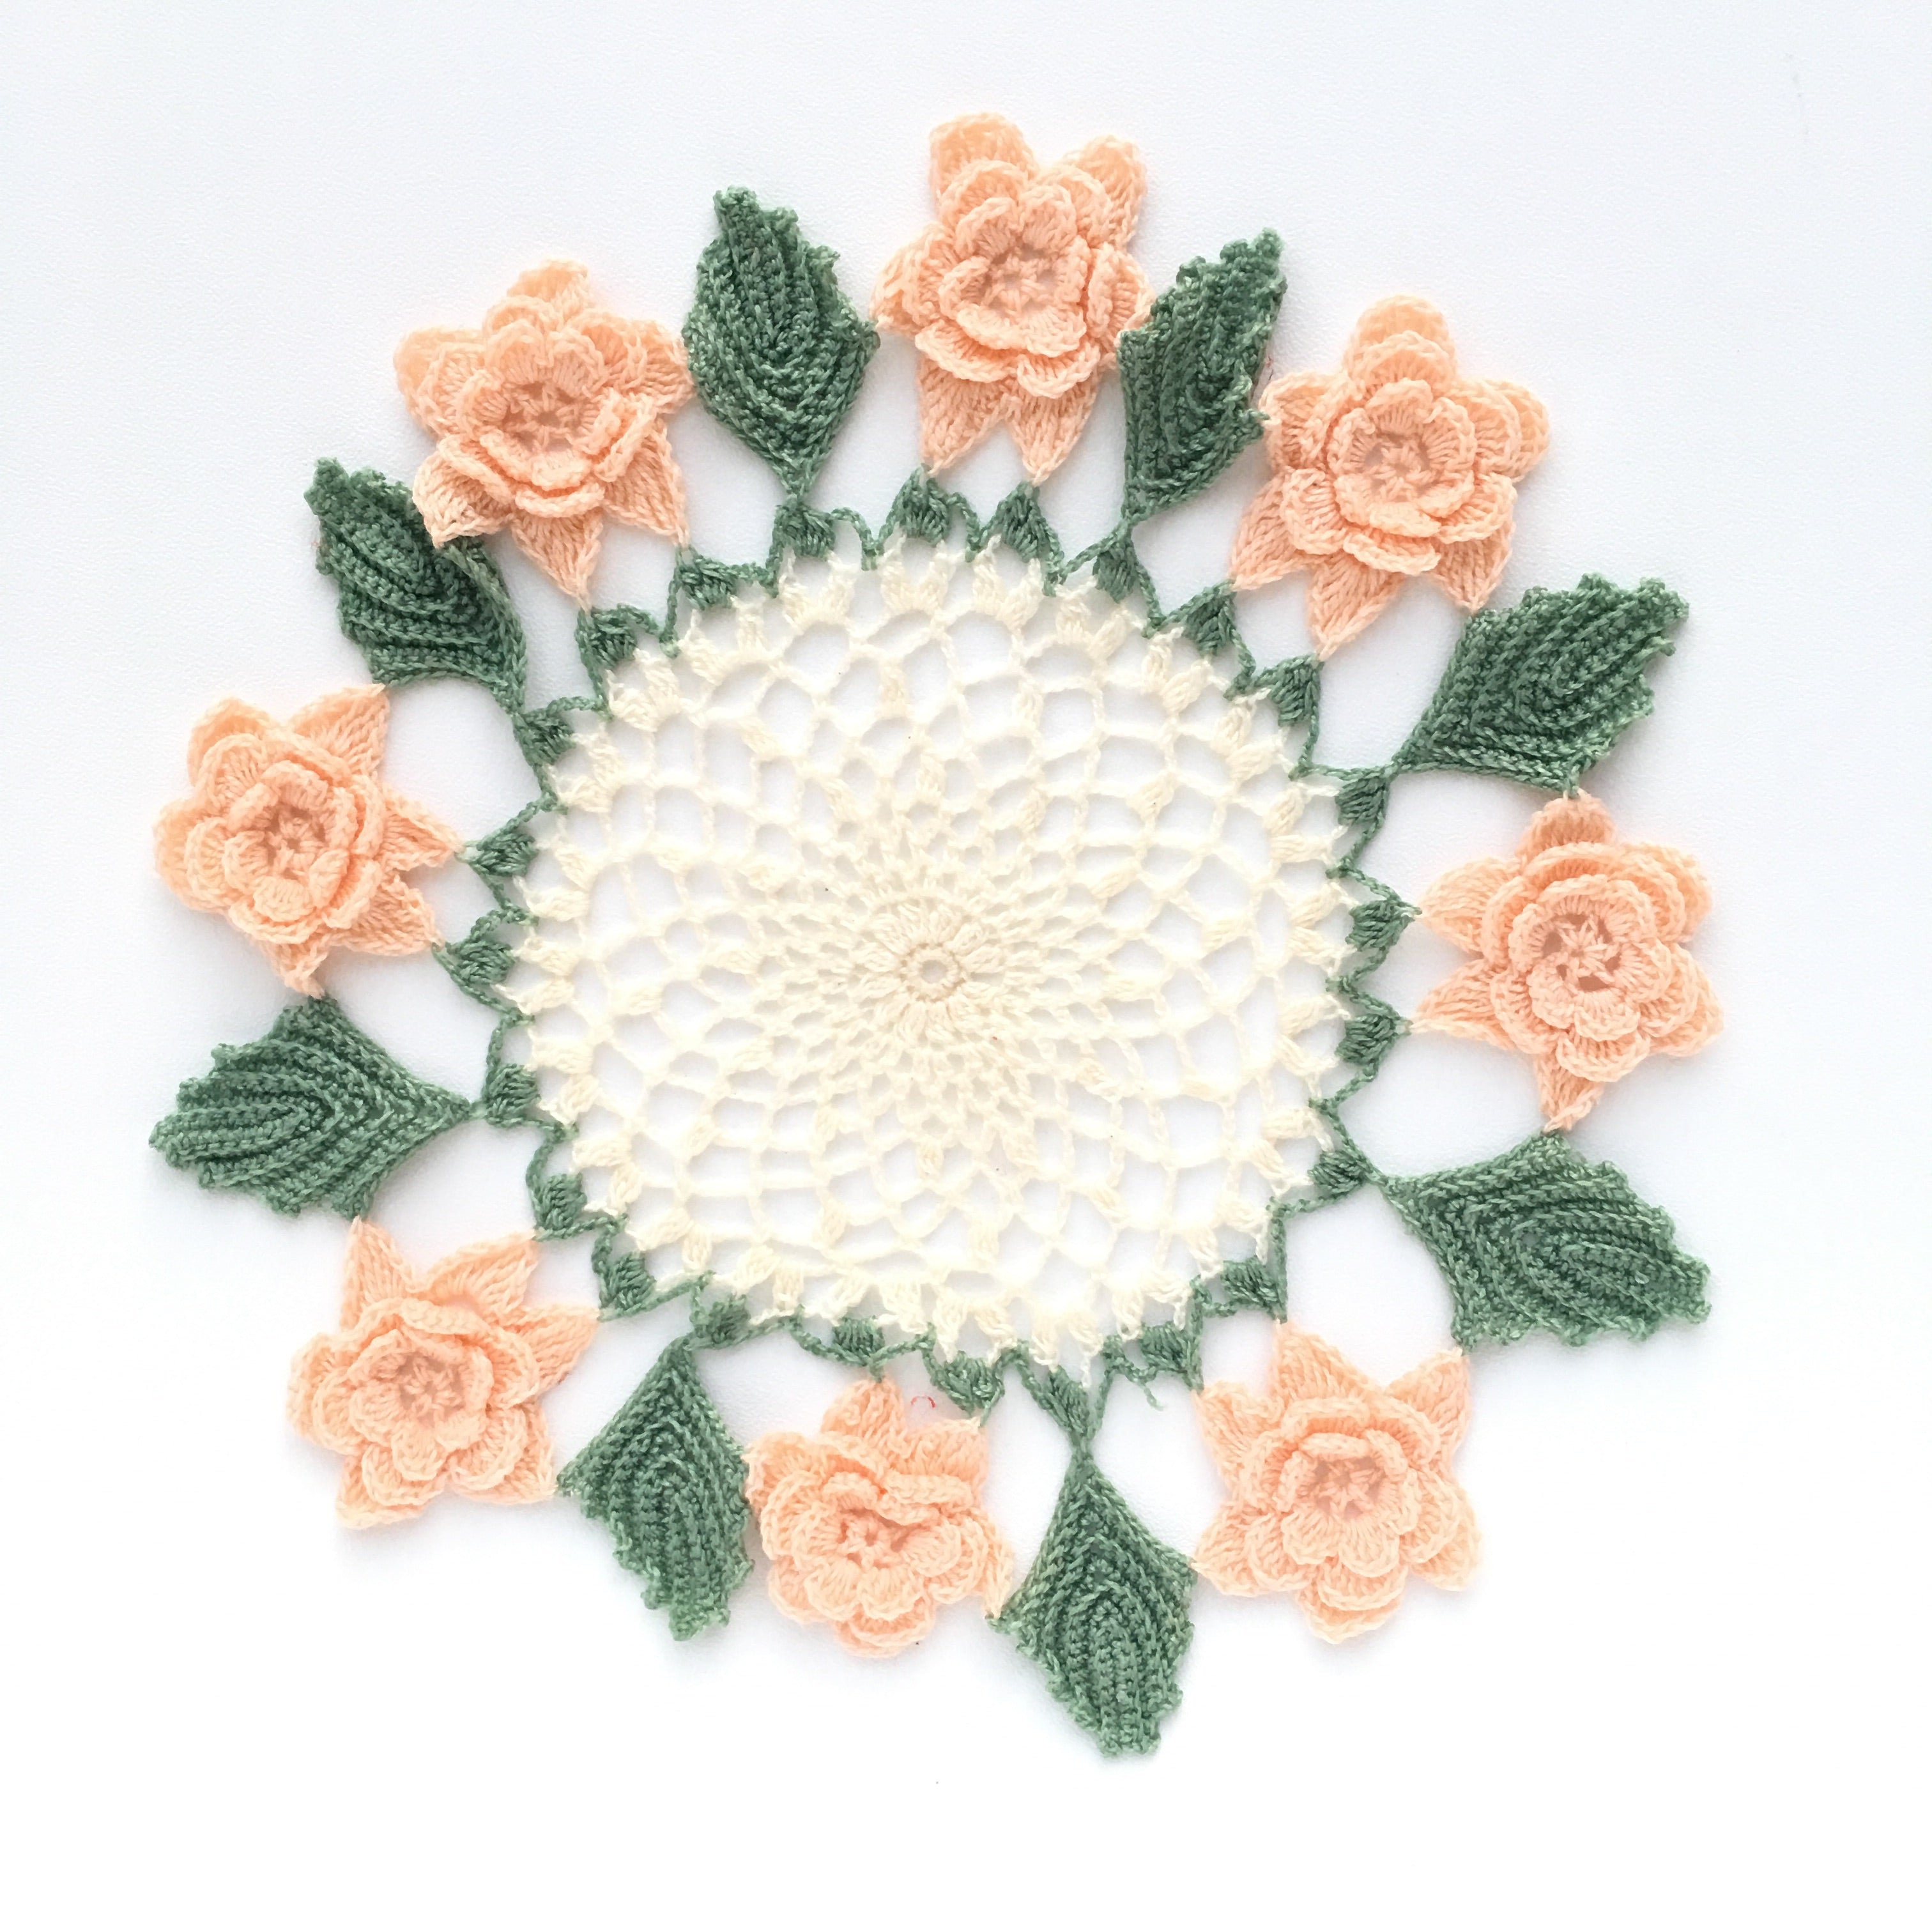 Crochet Rose Table Linen